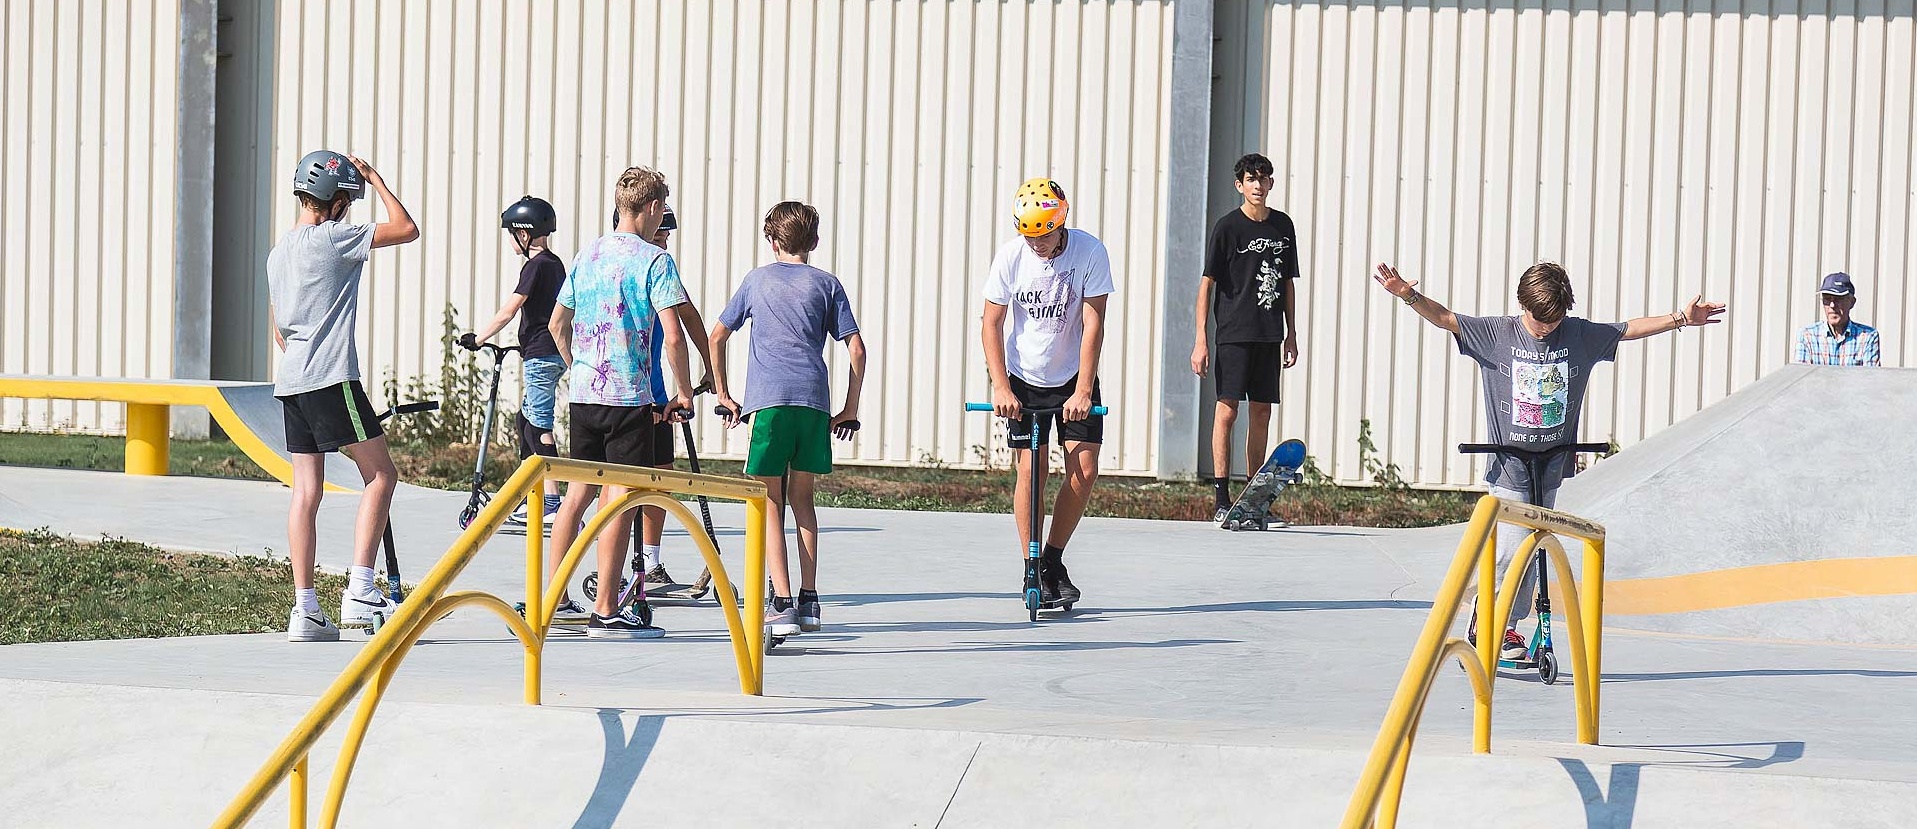 Jugendliche mit Scootern im Skatepark